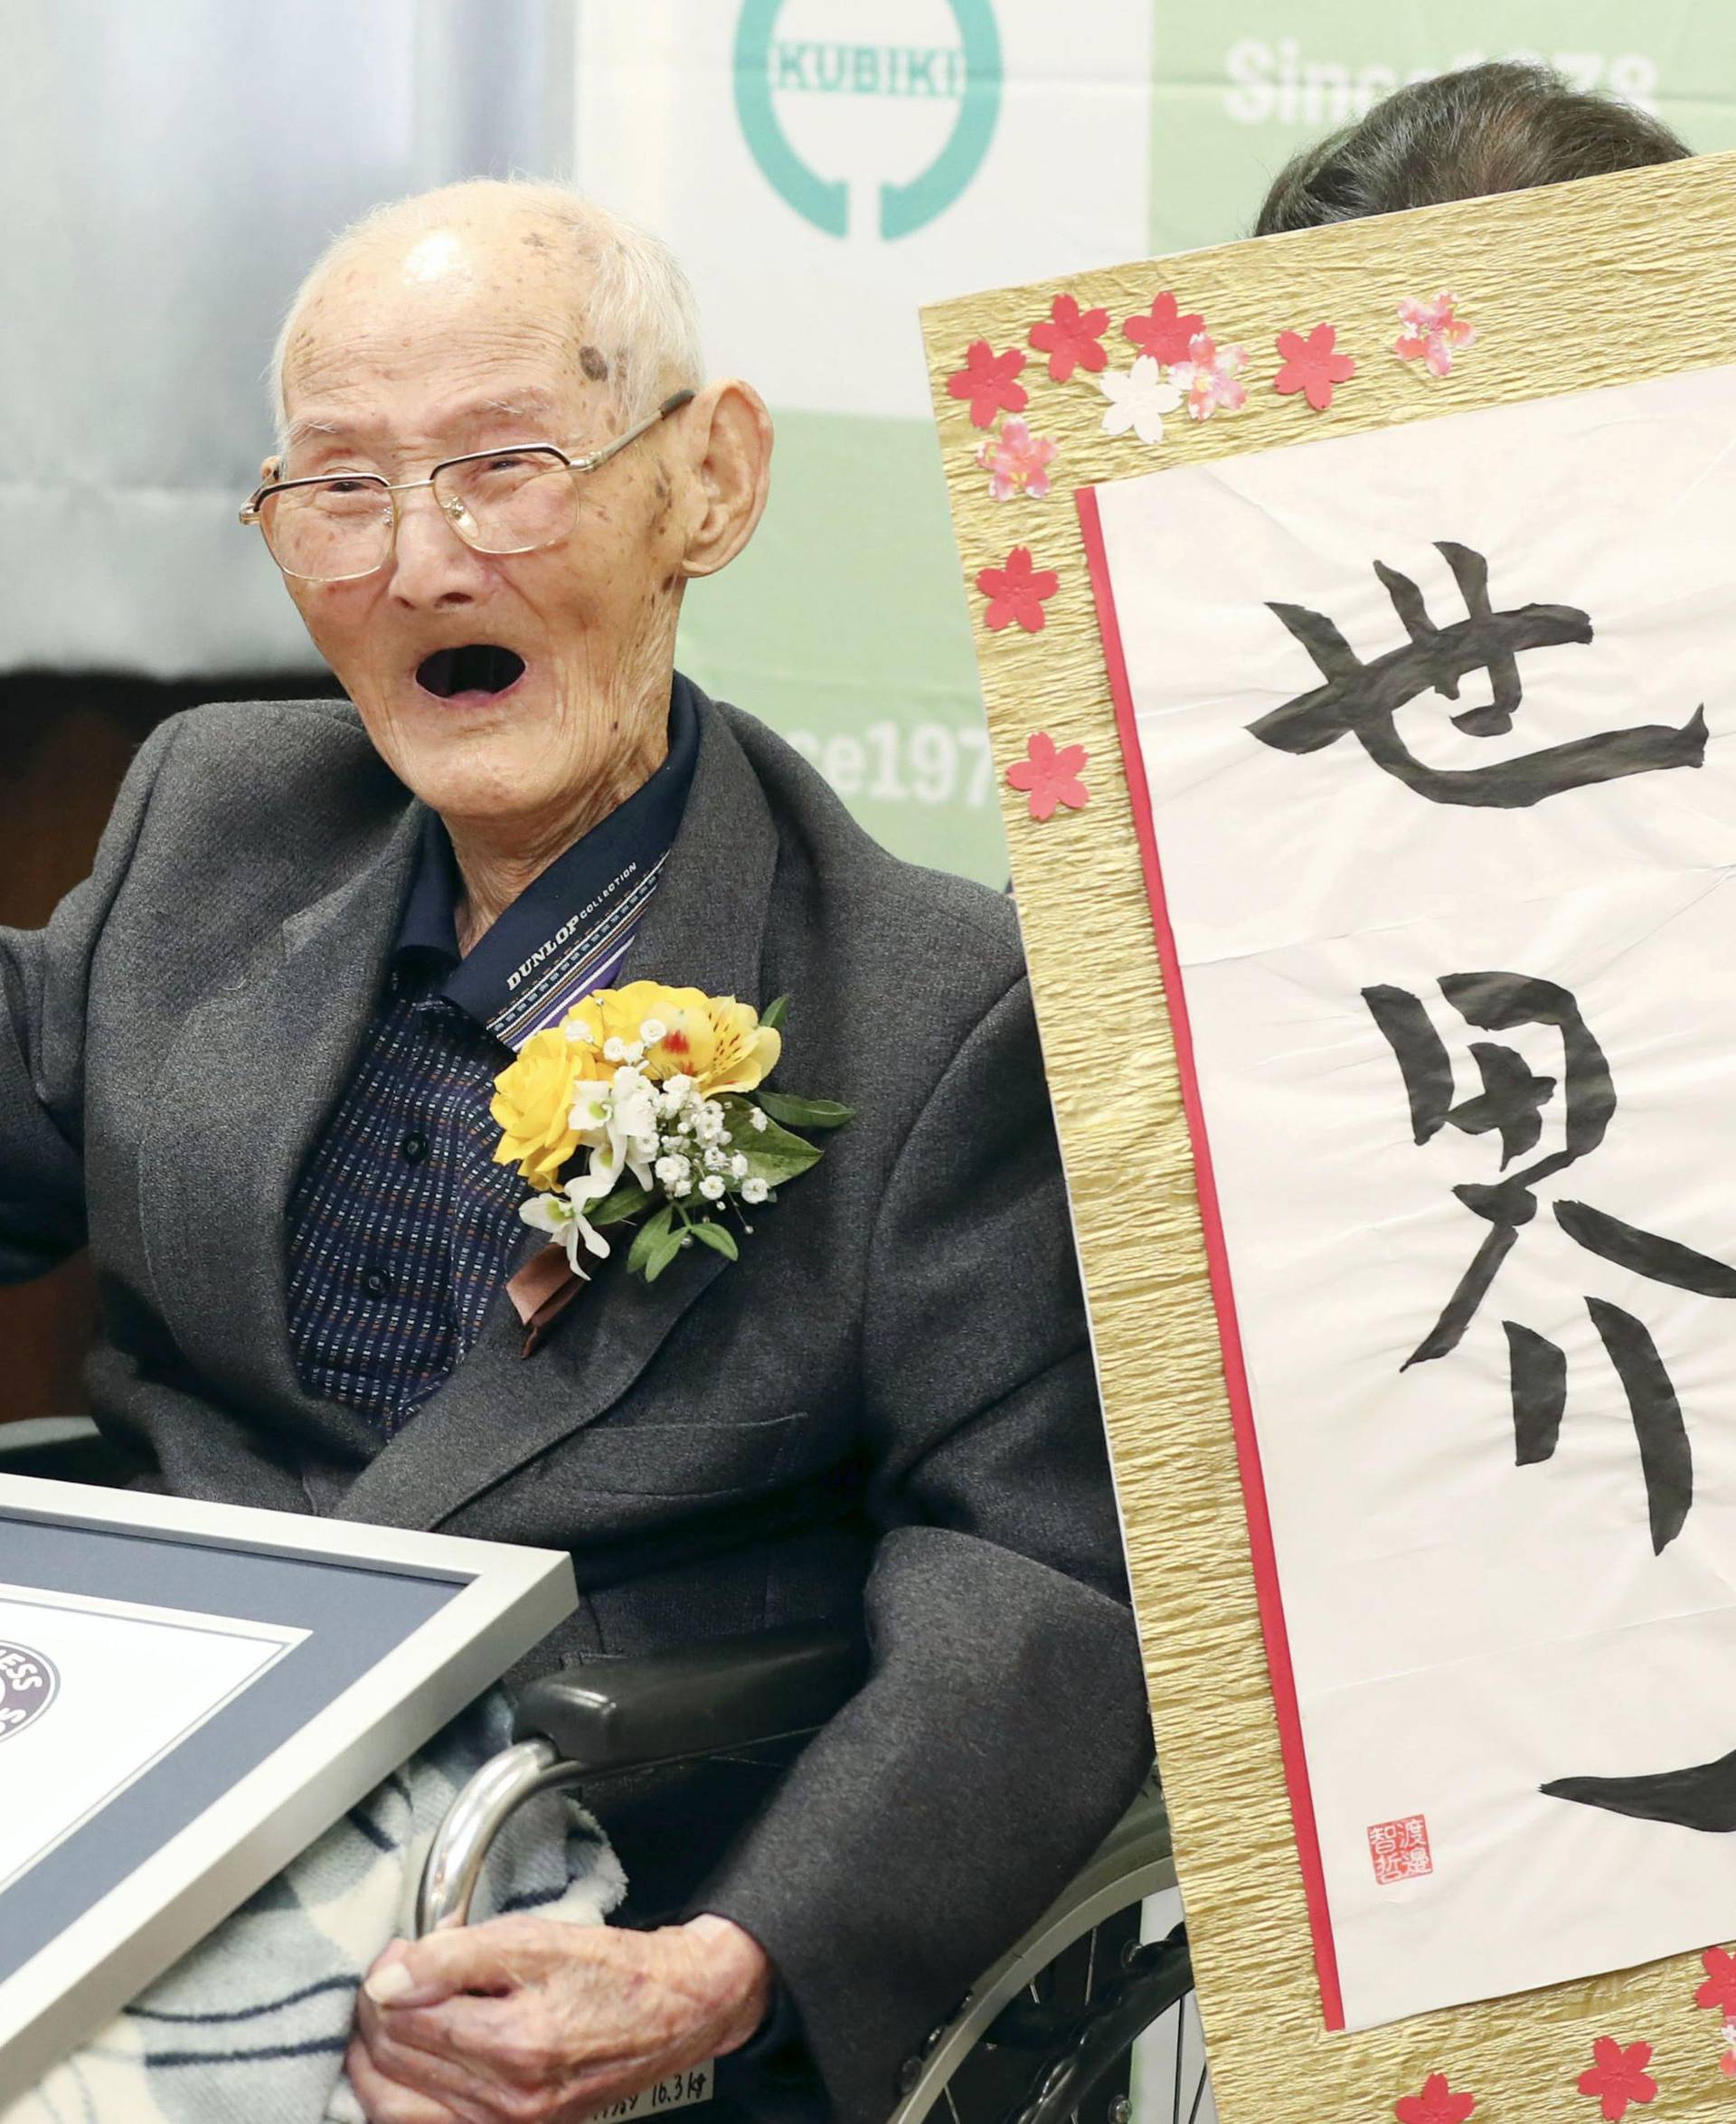 World's oldest man